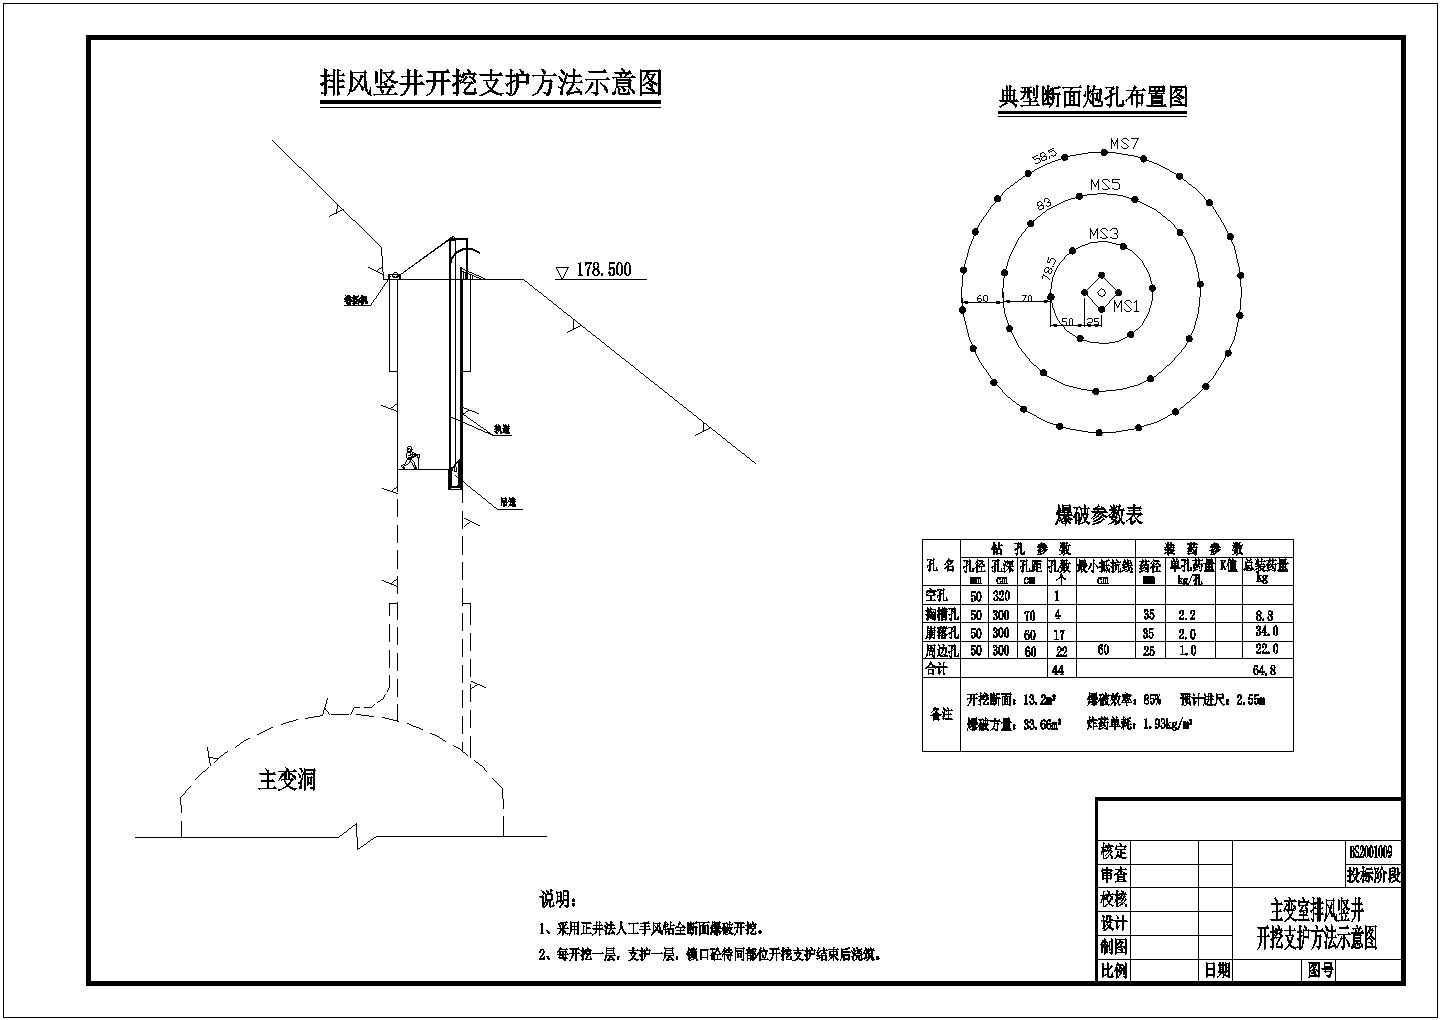 某水利枢纽水电站工程排风竖井施工设计图(含爆破参数表)